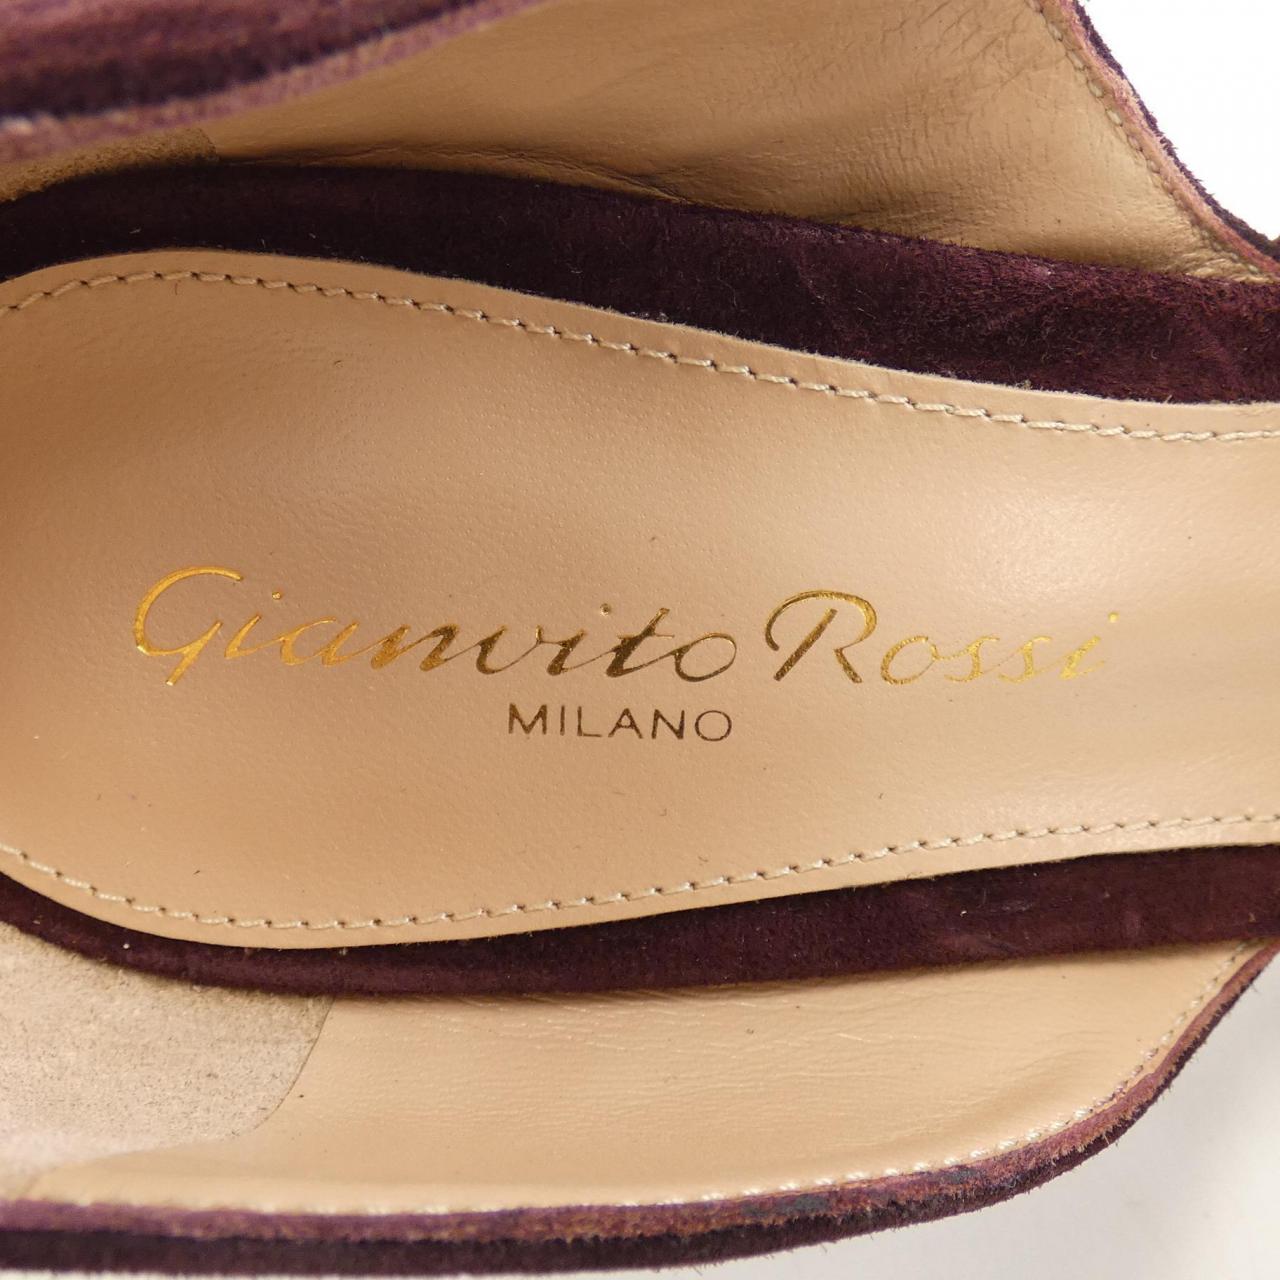 Gianvito Rossi GIANVITO ROSSI shoes